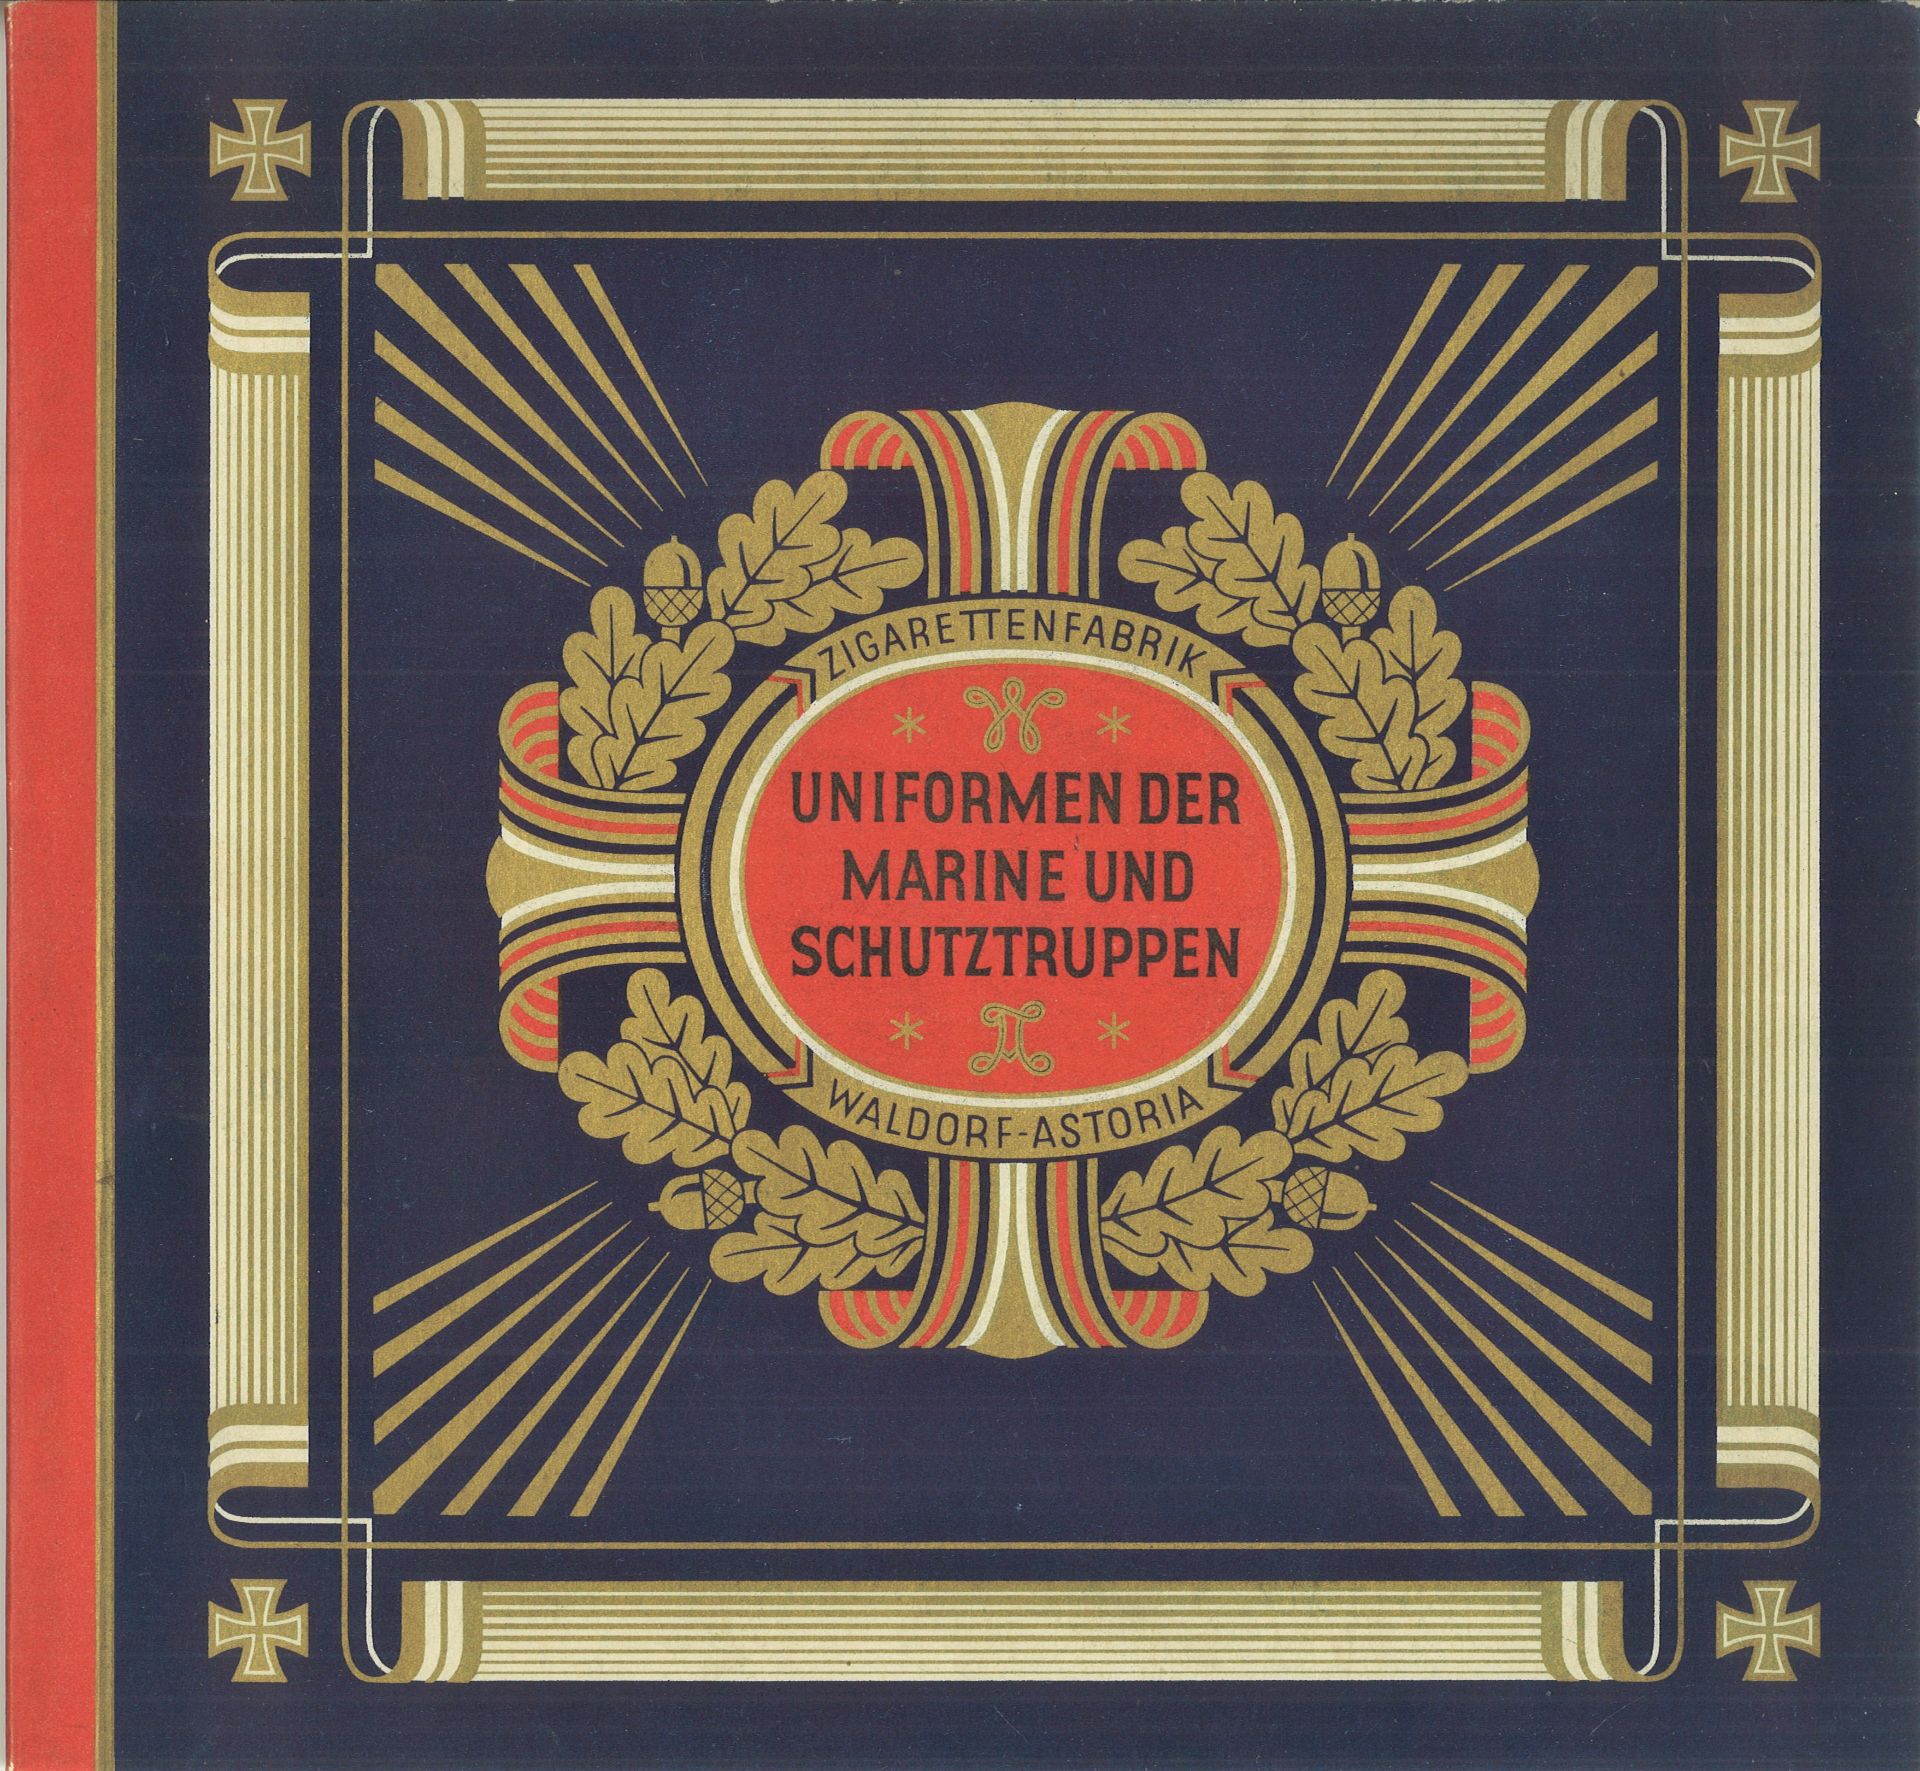 Sammelbilderalbum "Uniformen der Marine und Schutztruppen", Zigarettenfabrik, Waldorf - Astoria,